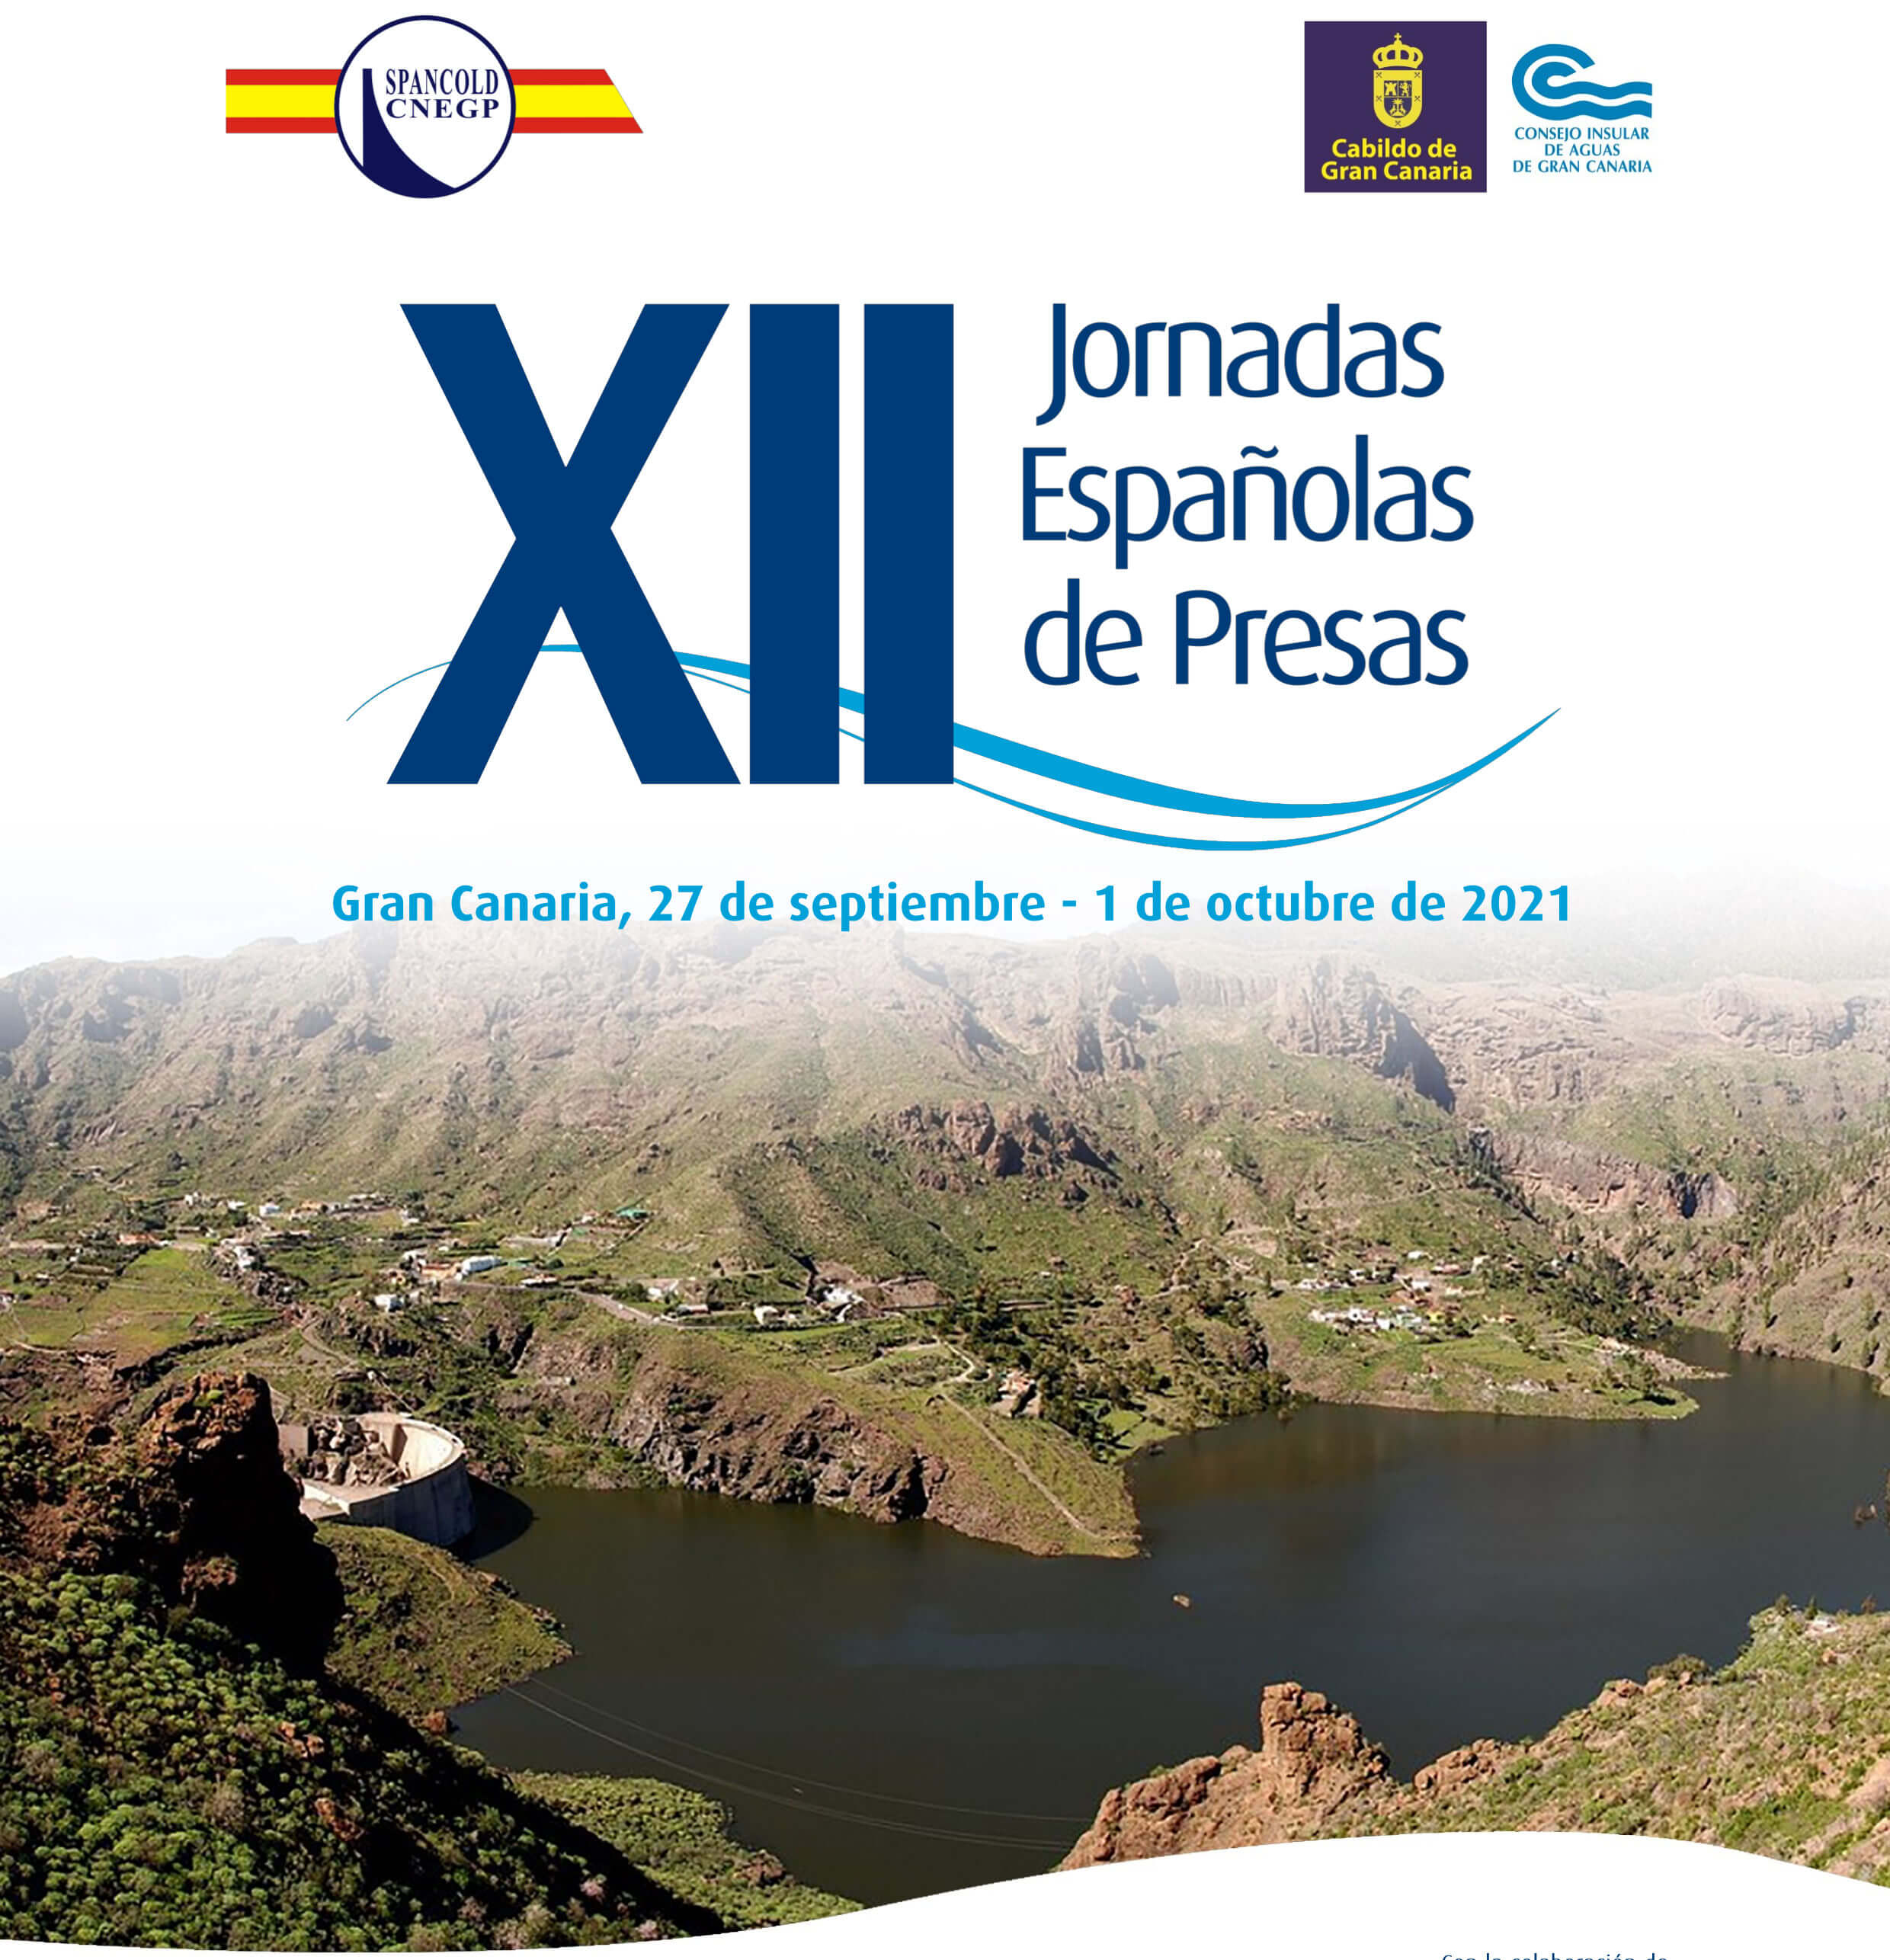 HCC participa de manera activa en las XII Jornadas Españolas de Presas en Las Palmas de Gran Canaria organizadas por Spancold.